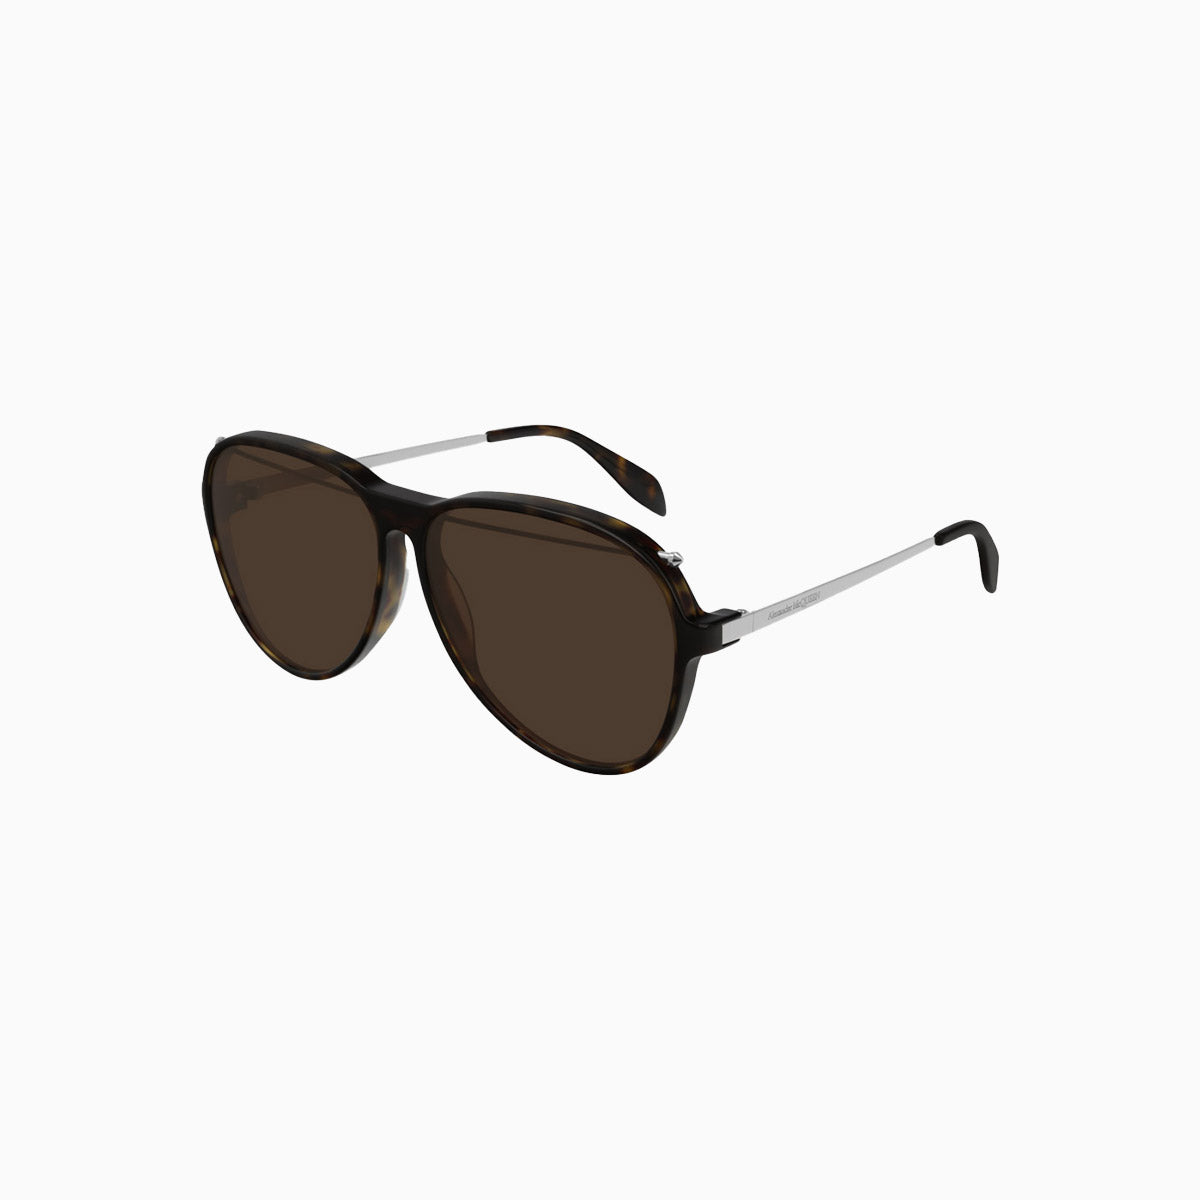 alexander-mcqueen-ruthenium-havana-brown-sunglasses-am0193s-002